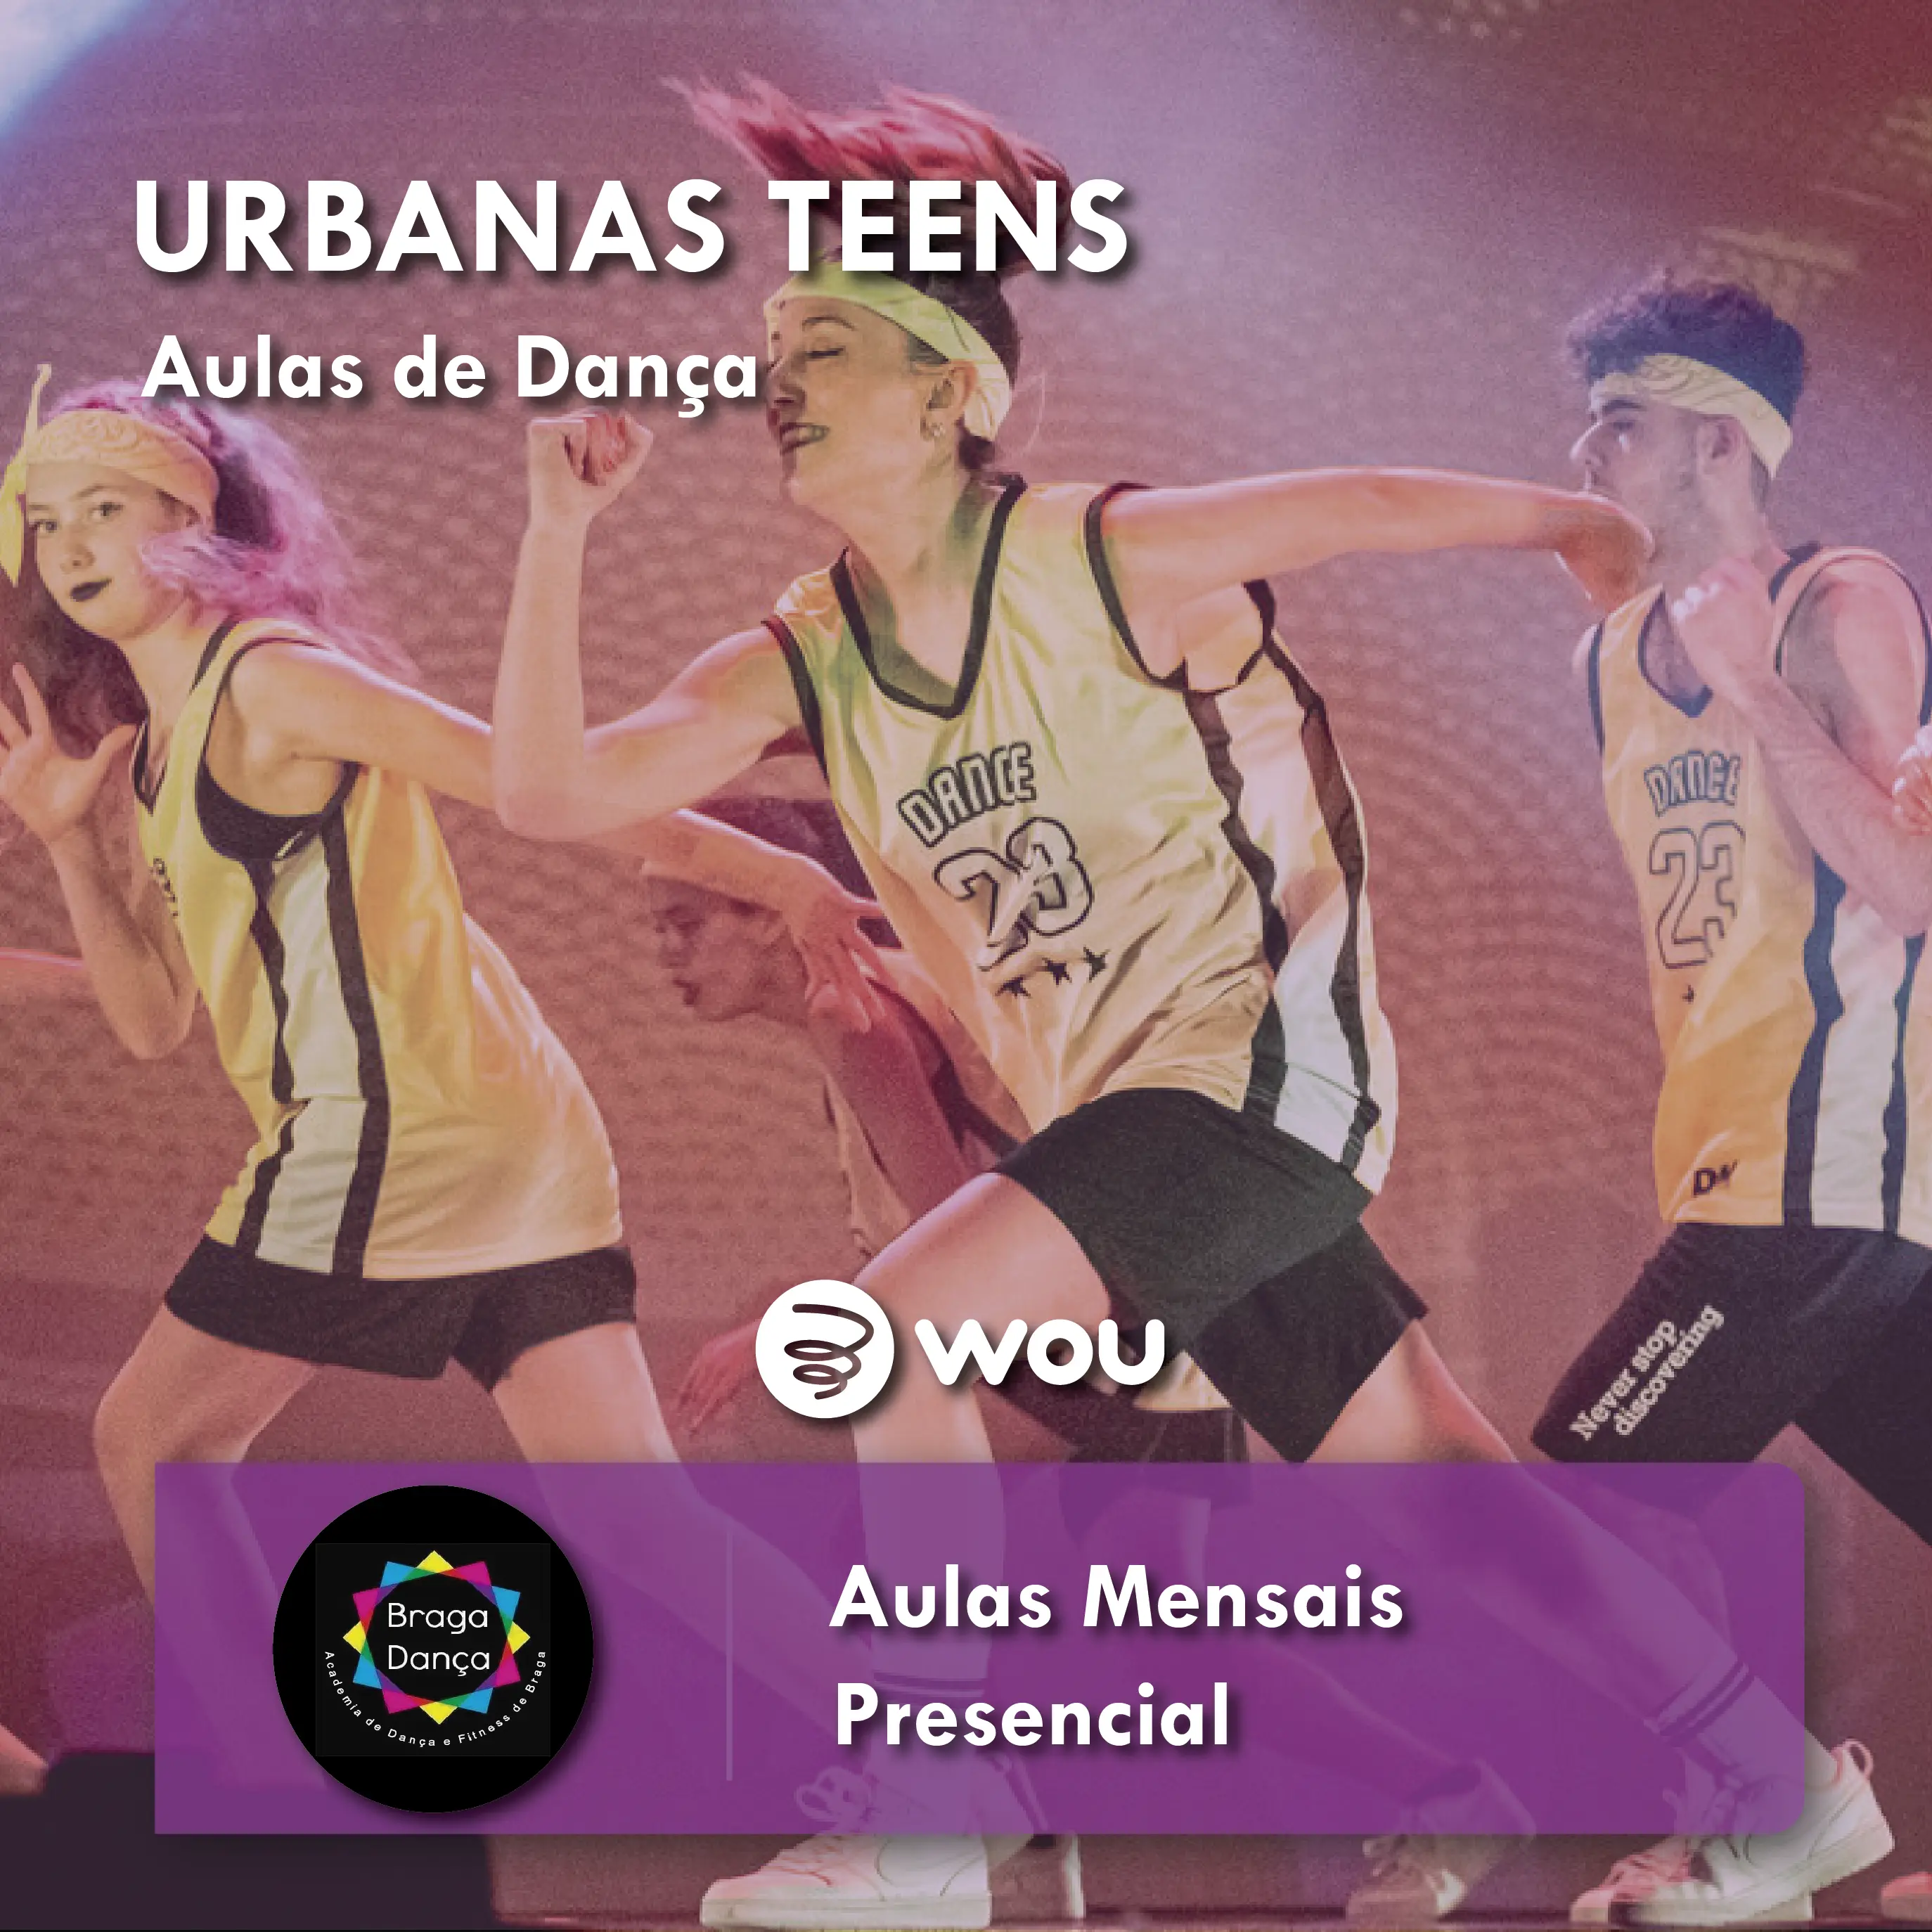 Teens Urban Dance Classes in Braga